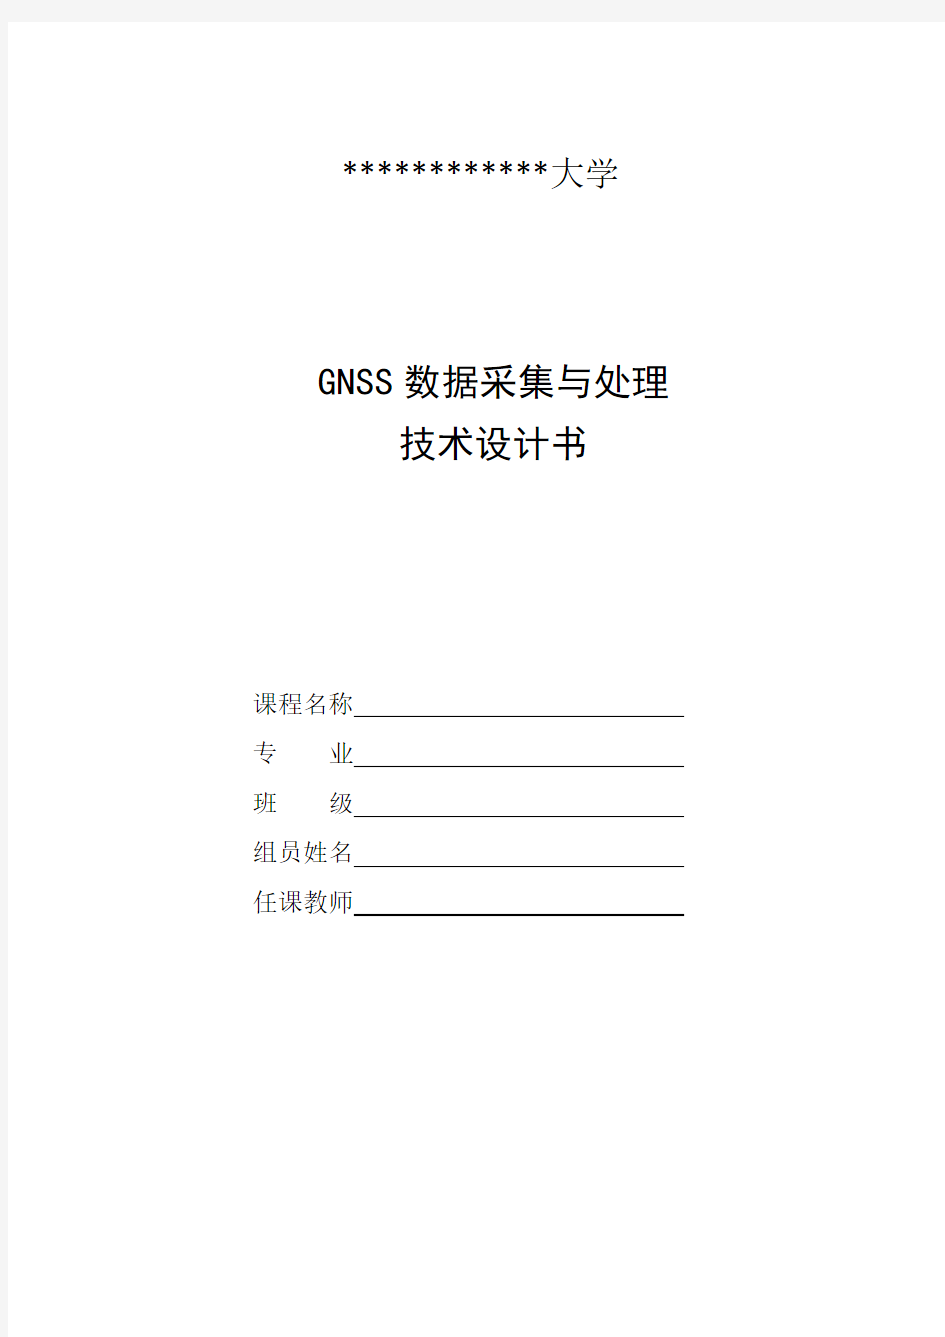 GNSS数据采集与处理技术设计书